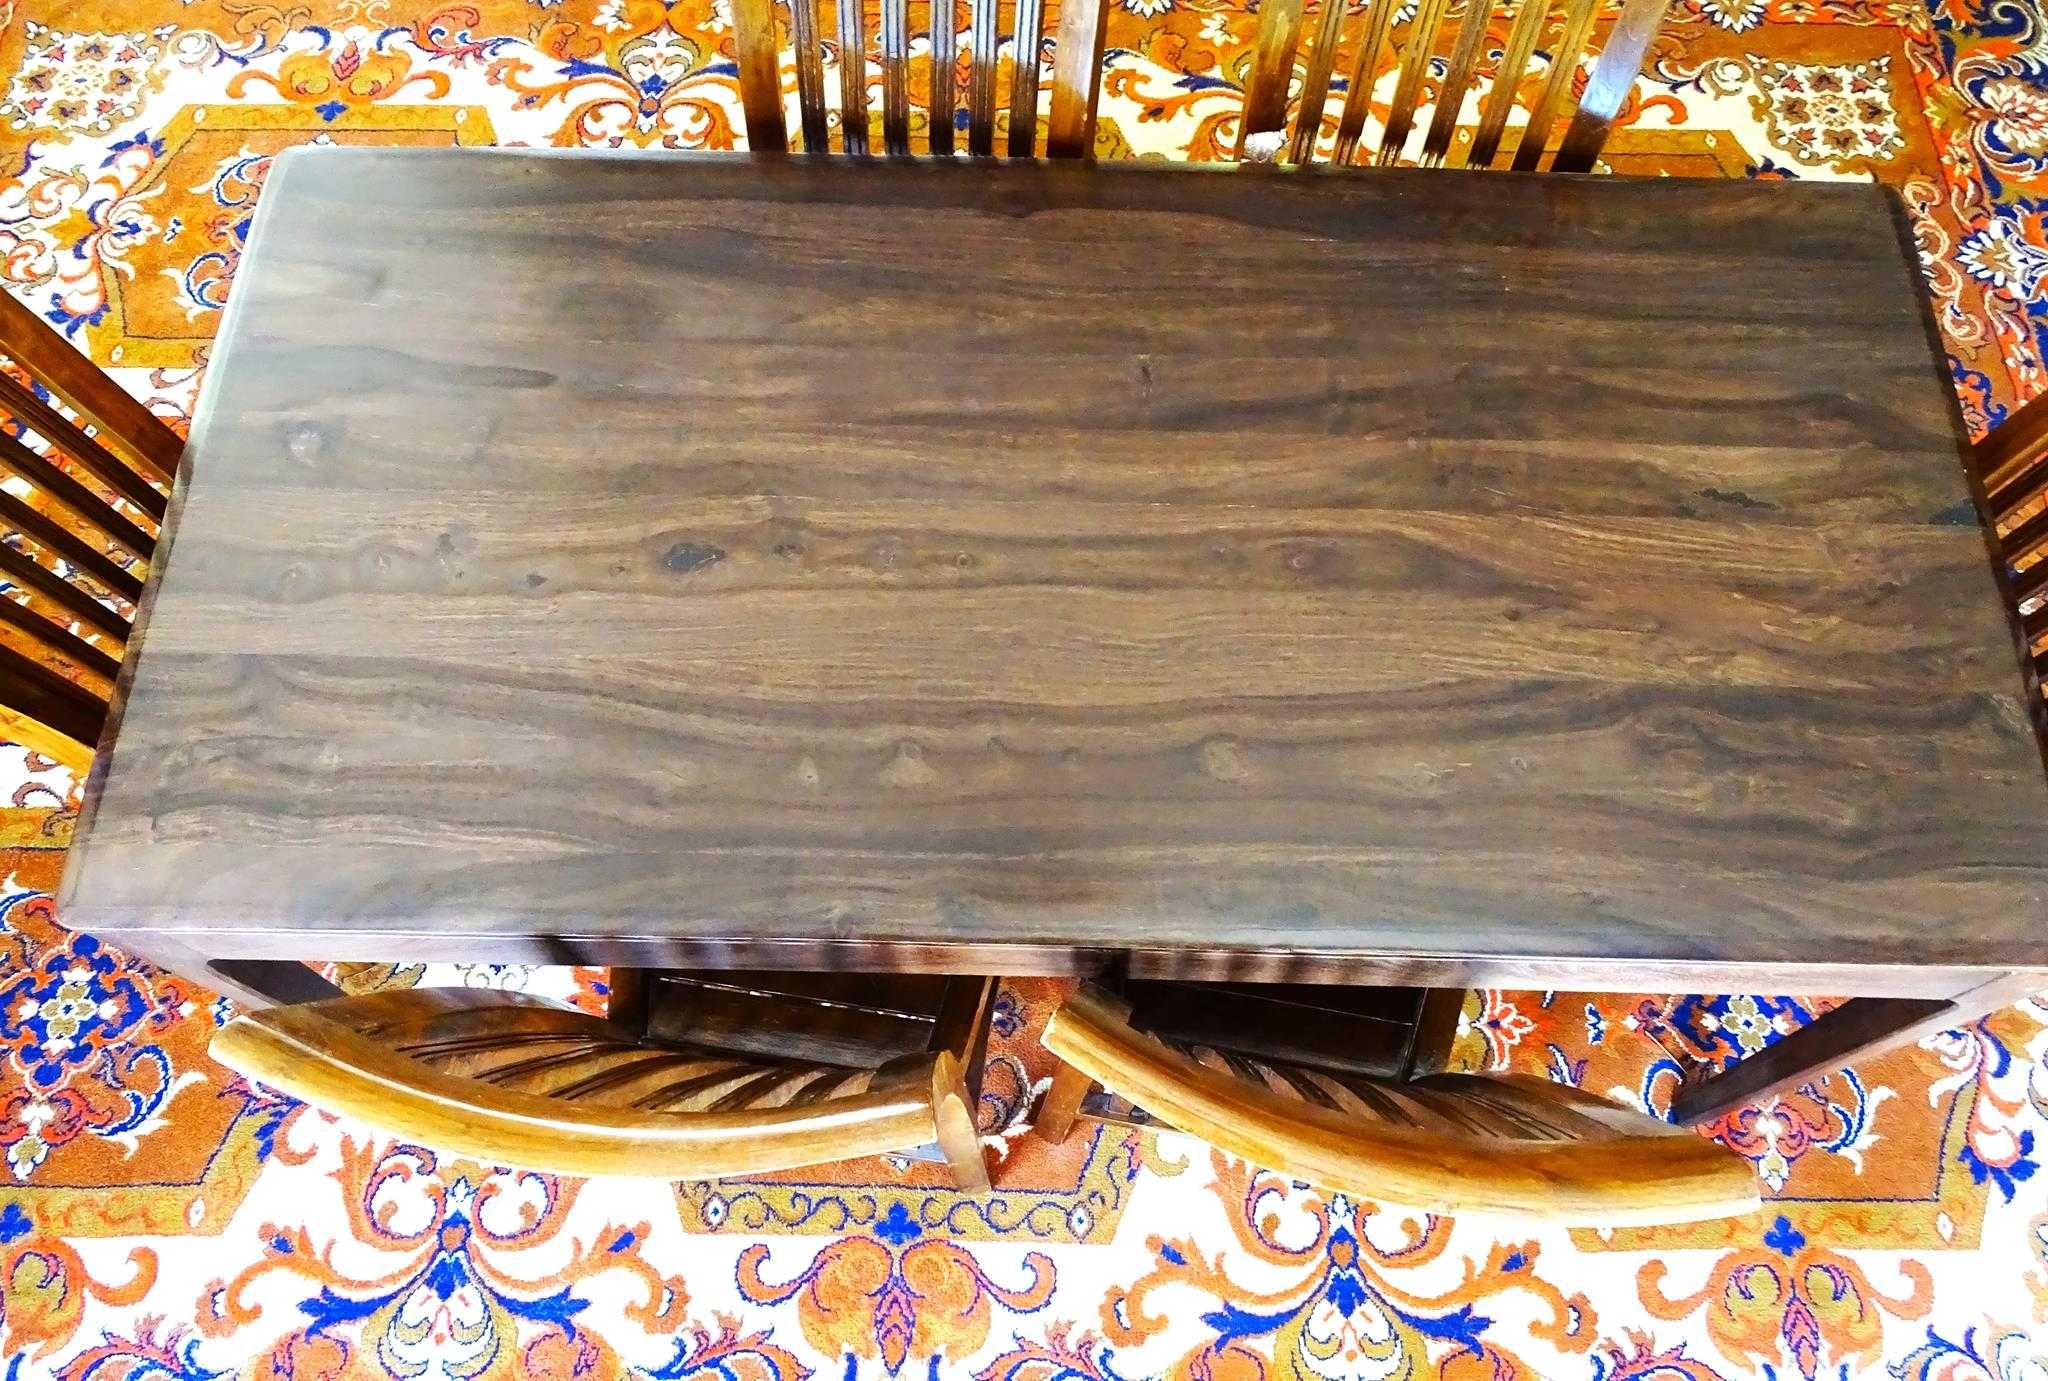 Indyjski komplet do jadalni - stół 160x80 + 6 krzeseł drewnianych